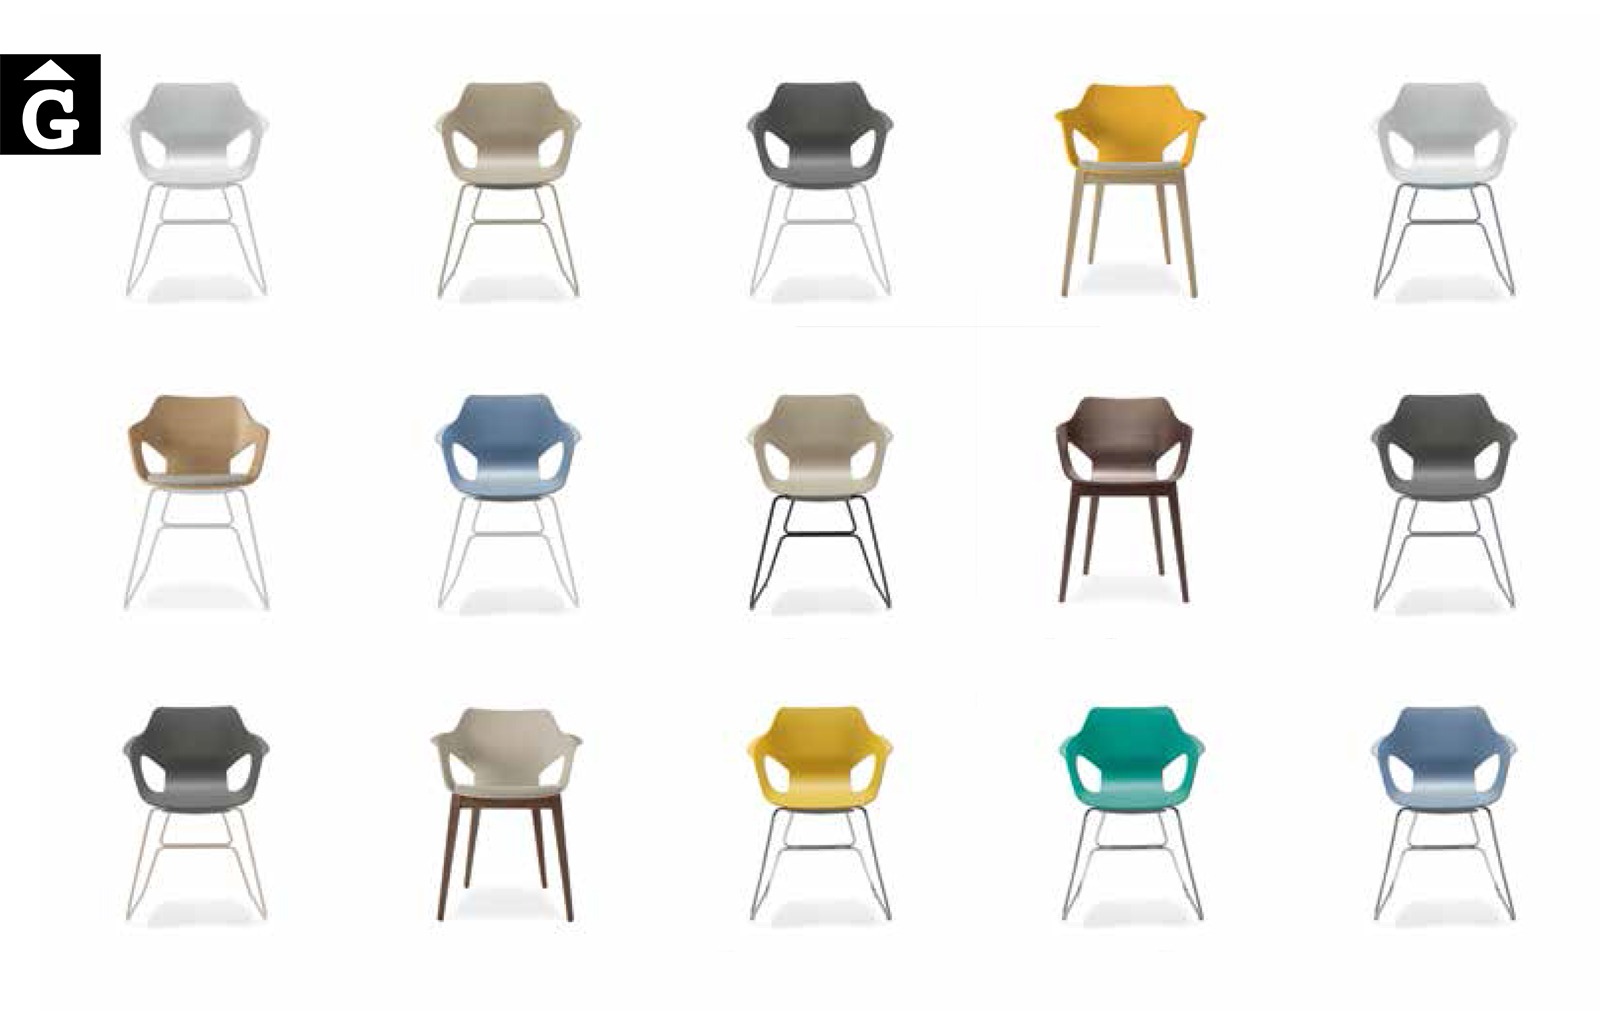 44 1 0 Loyra muebles by mobles Gifreu Idees per la llar moble de qualitat